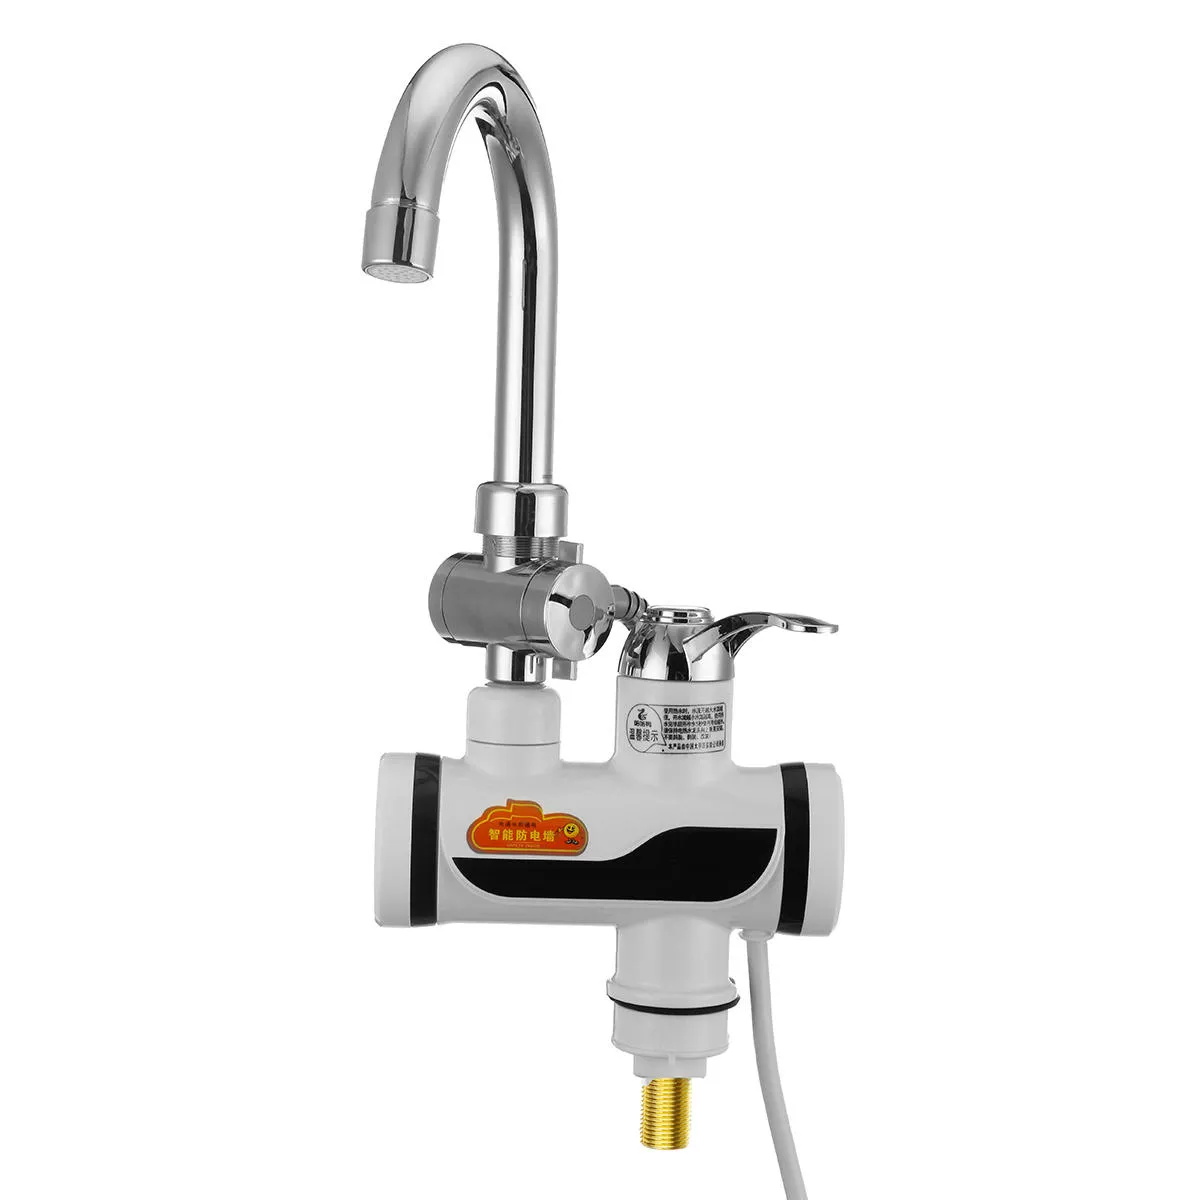 Natychmiastowy elektryczny podgrzewacz wody szybki kran ogrzewania kran kuchenny zimny mikser dotknij wyświetlacz LED180a